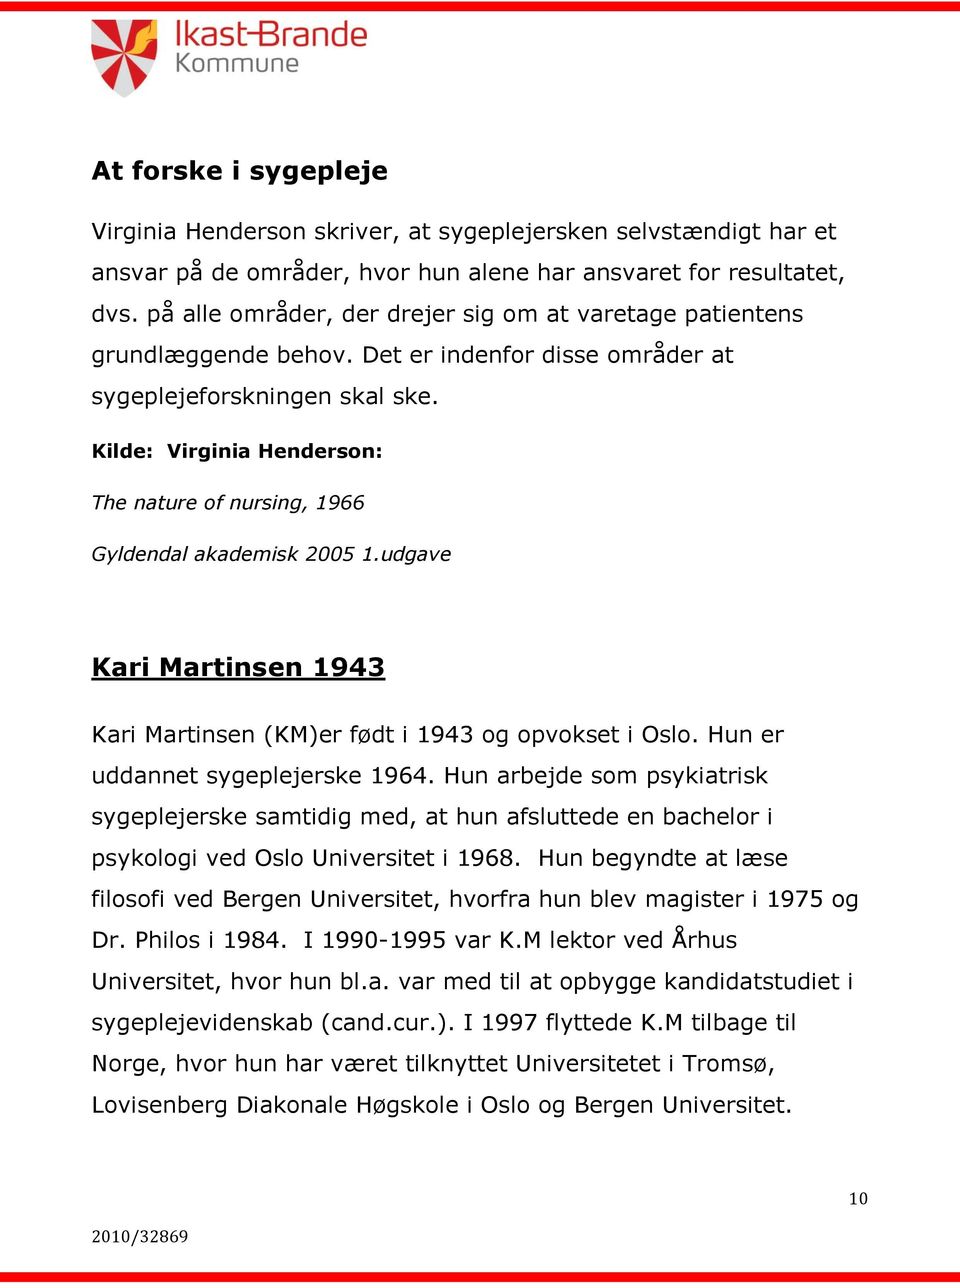 Kilde: Virginia Henderson: The nature of nursing, 1966 Gyldendal akademisk 2005 1.udgave Kari Martinsen 1943 Kari Martinsen (KM)er født i 1943 og opvokset i Oslo. Hun er uddannet sygeplejerske 1964.